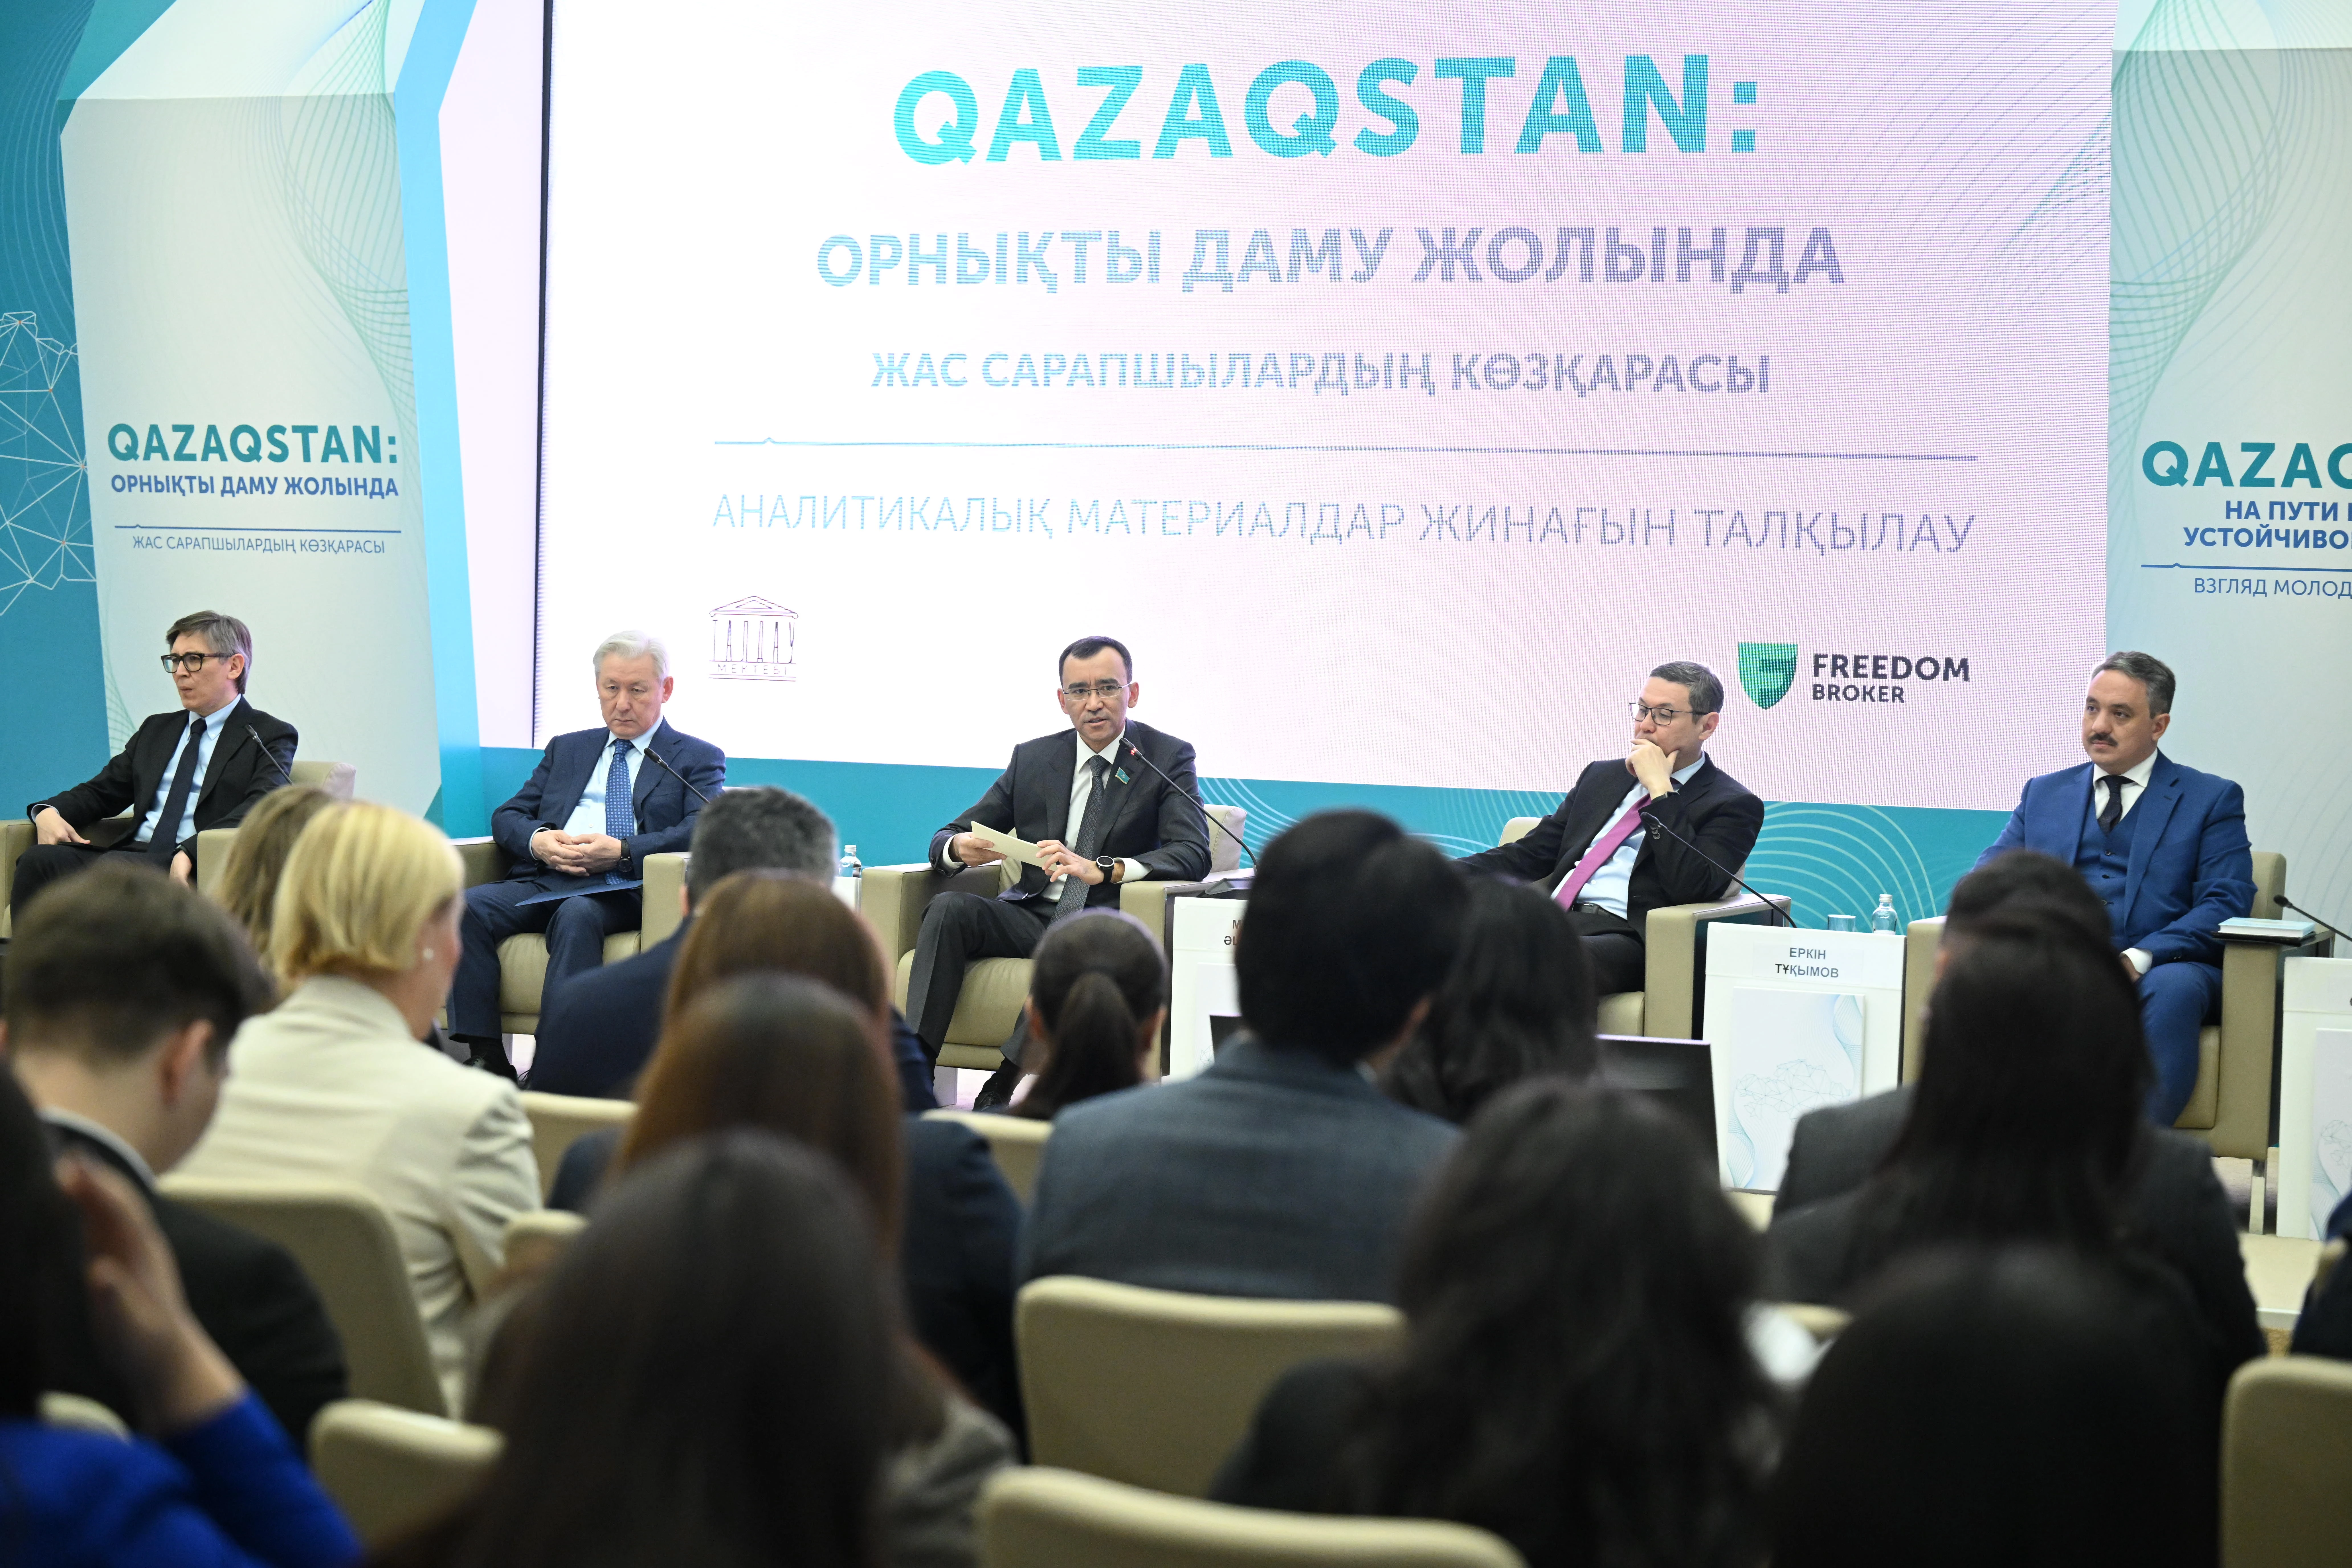 «Qazaqstan: орнықты даму жолында» жинағының таныстырылымы өтті